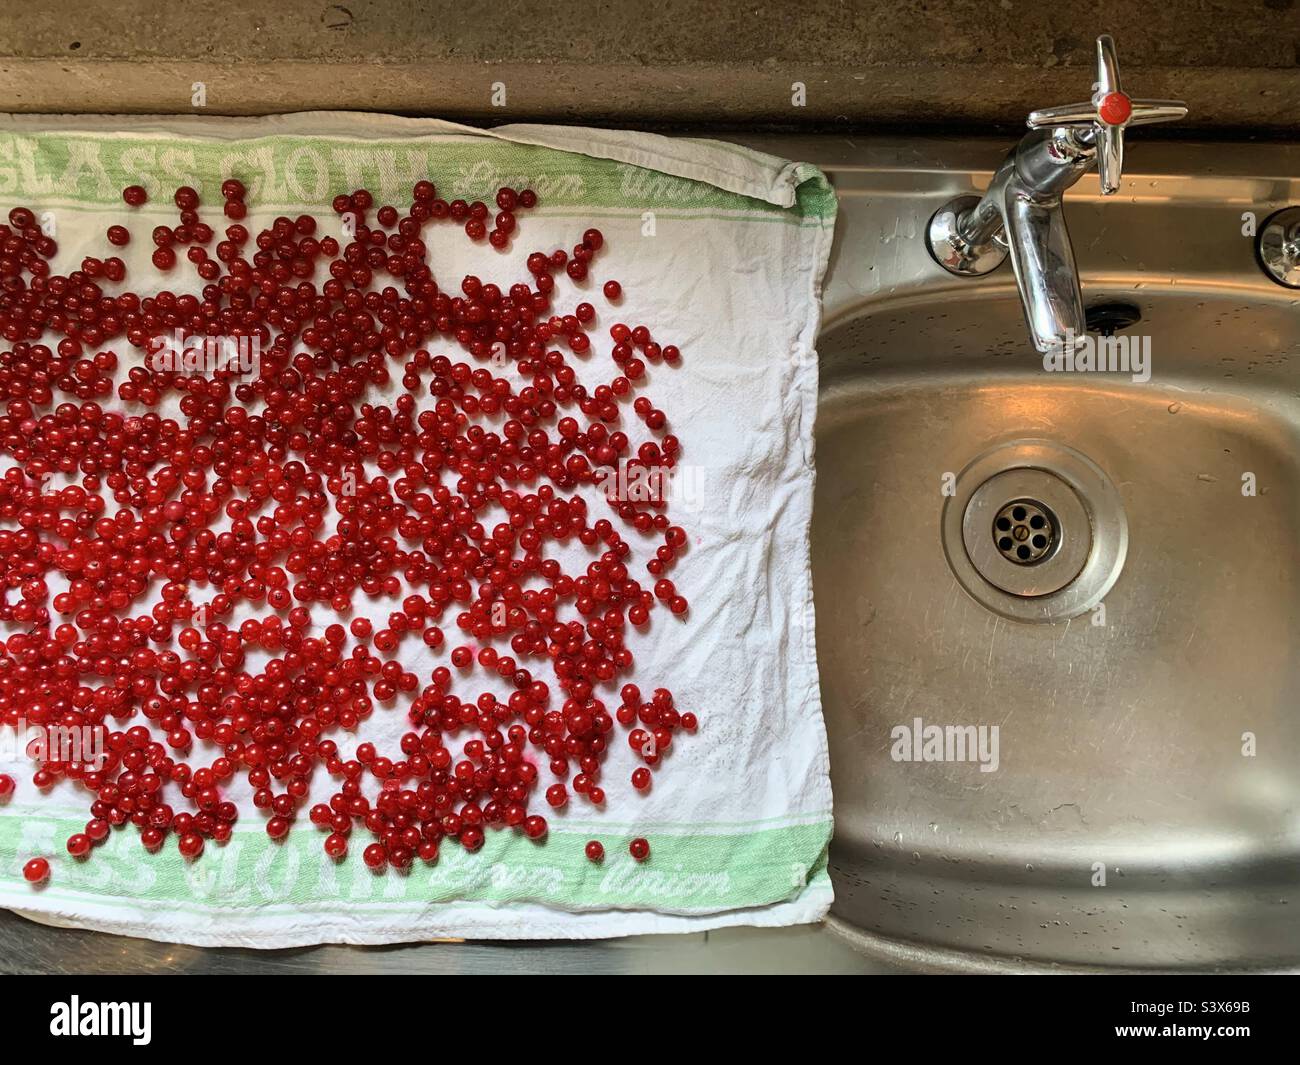 Rote Johannisbeeren trocknen auf einem abtropfenden Brett Stockfoto